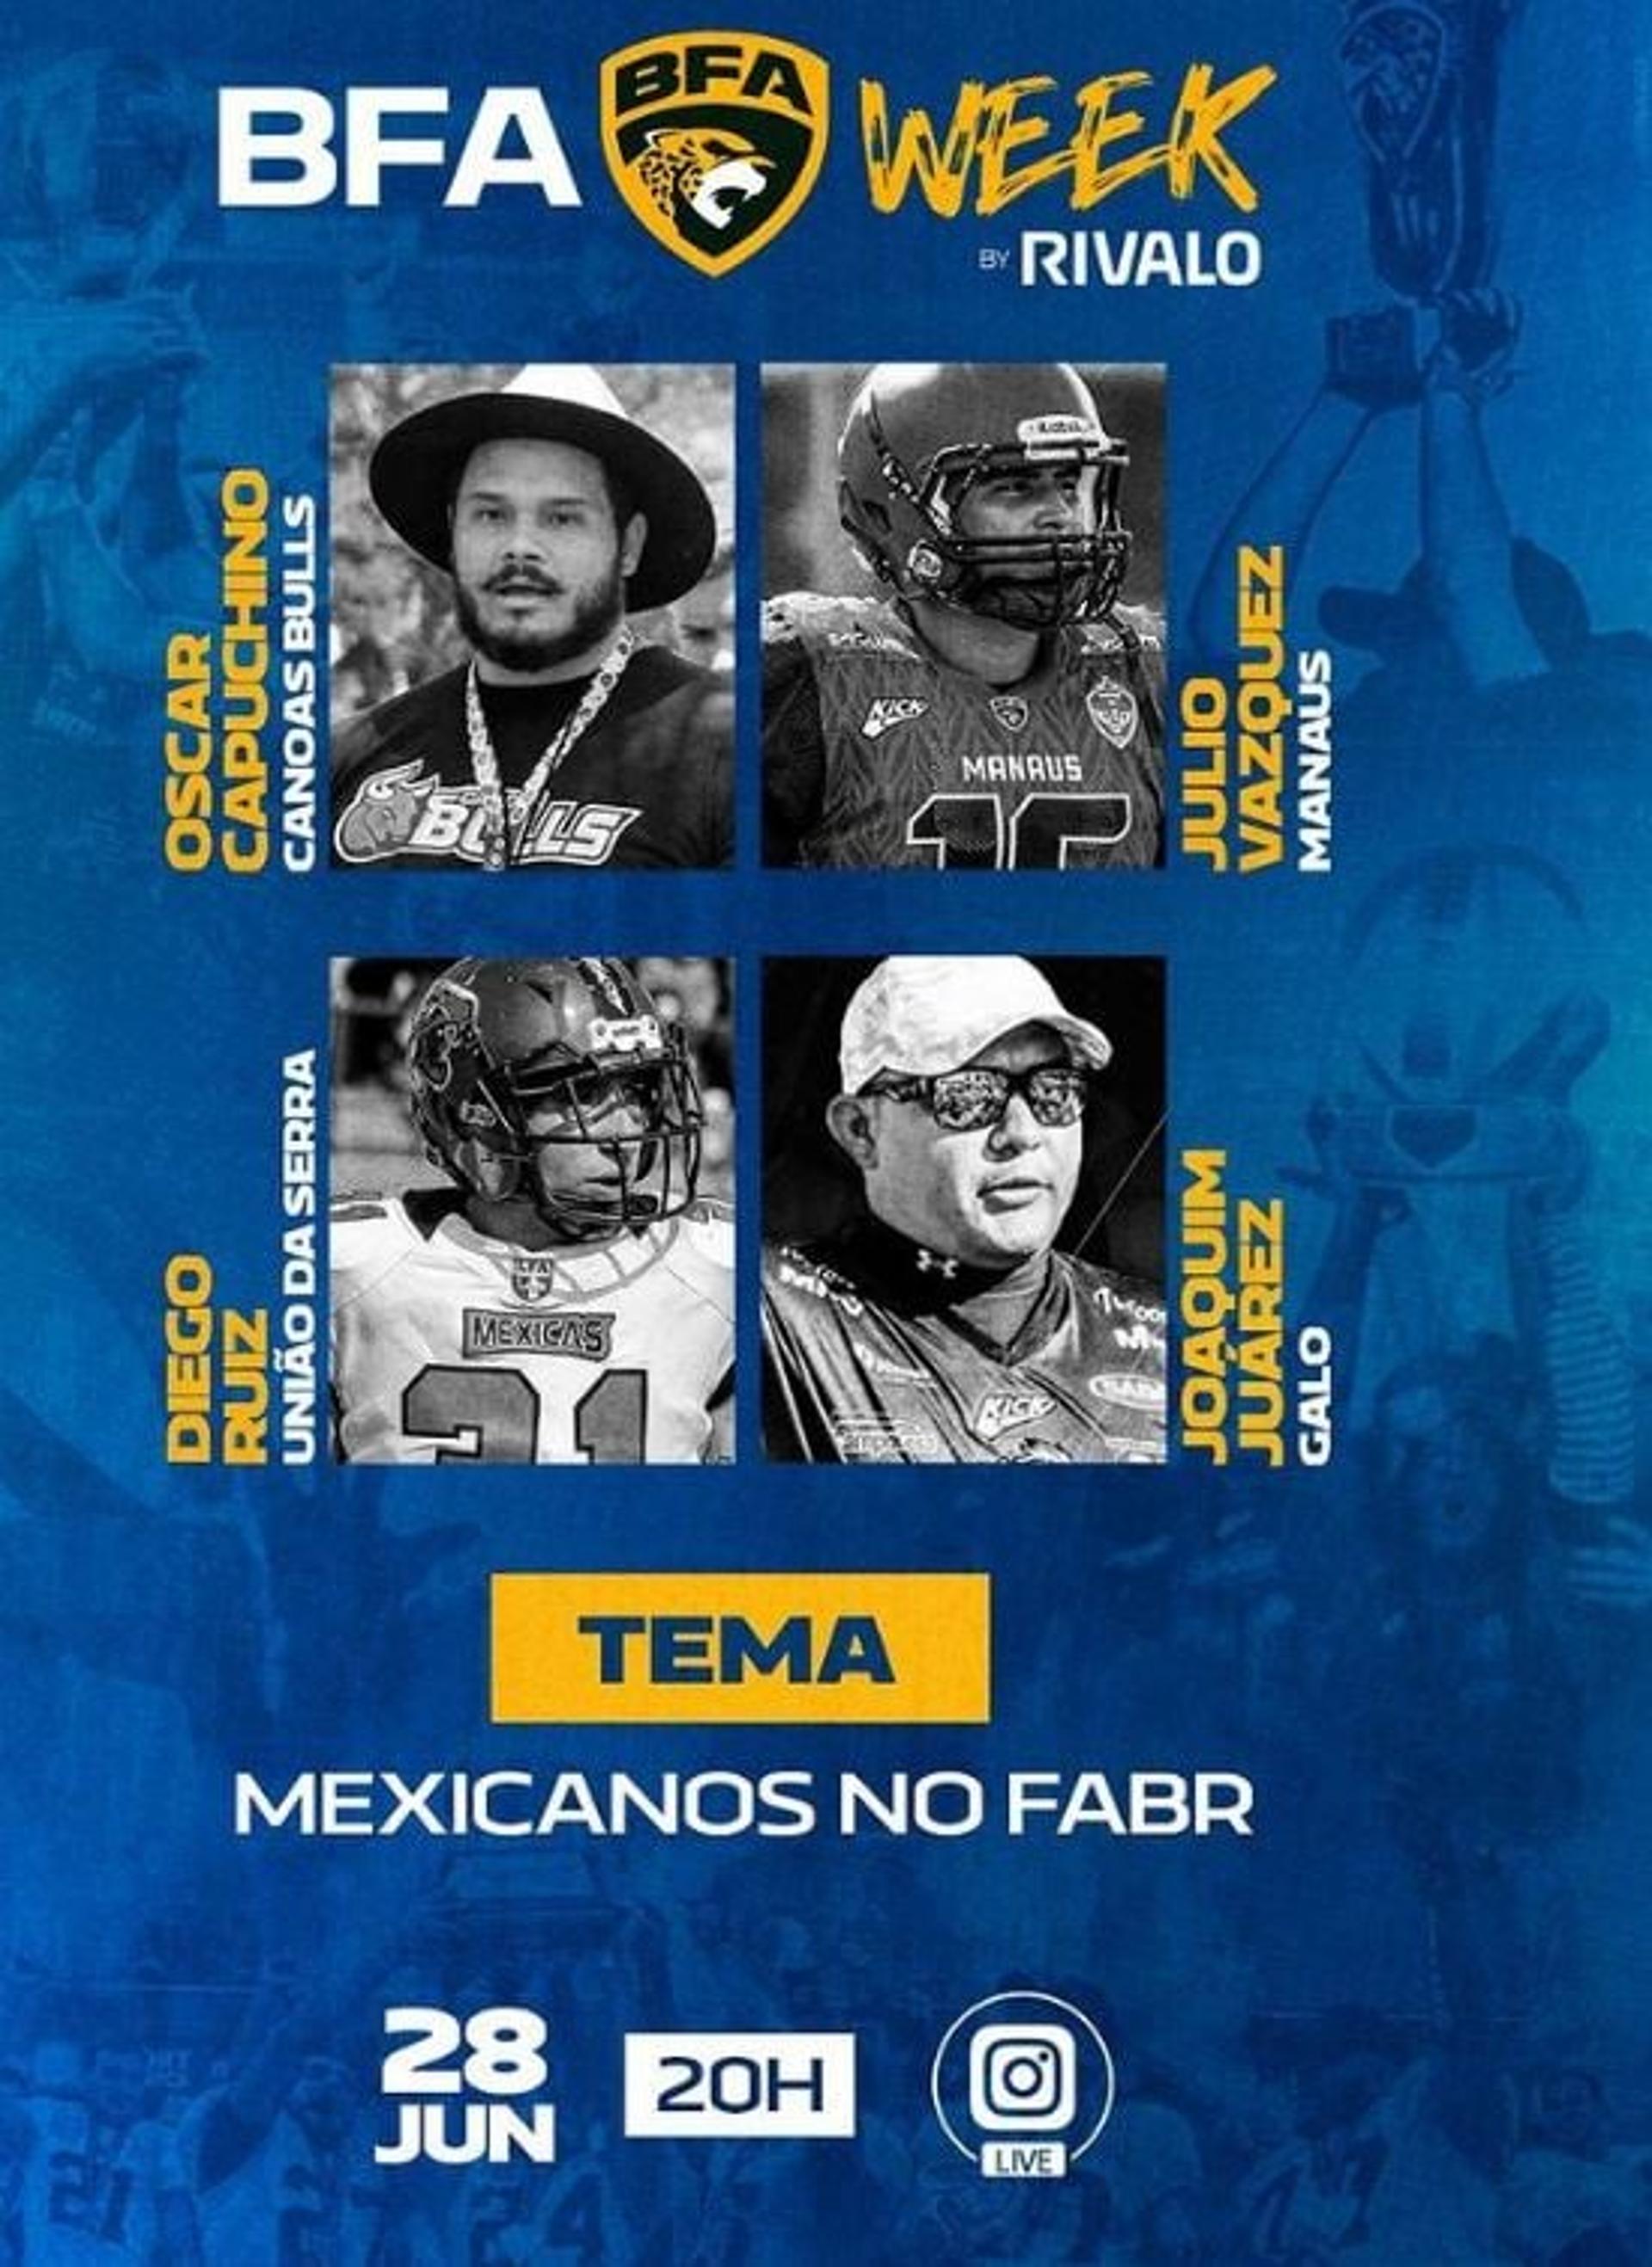 BFA Week contará com a presença de dois head coaches e dois atletas, todos nascidos no México